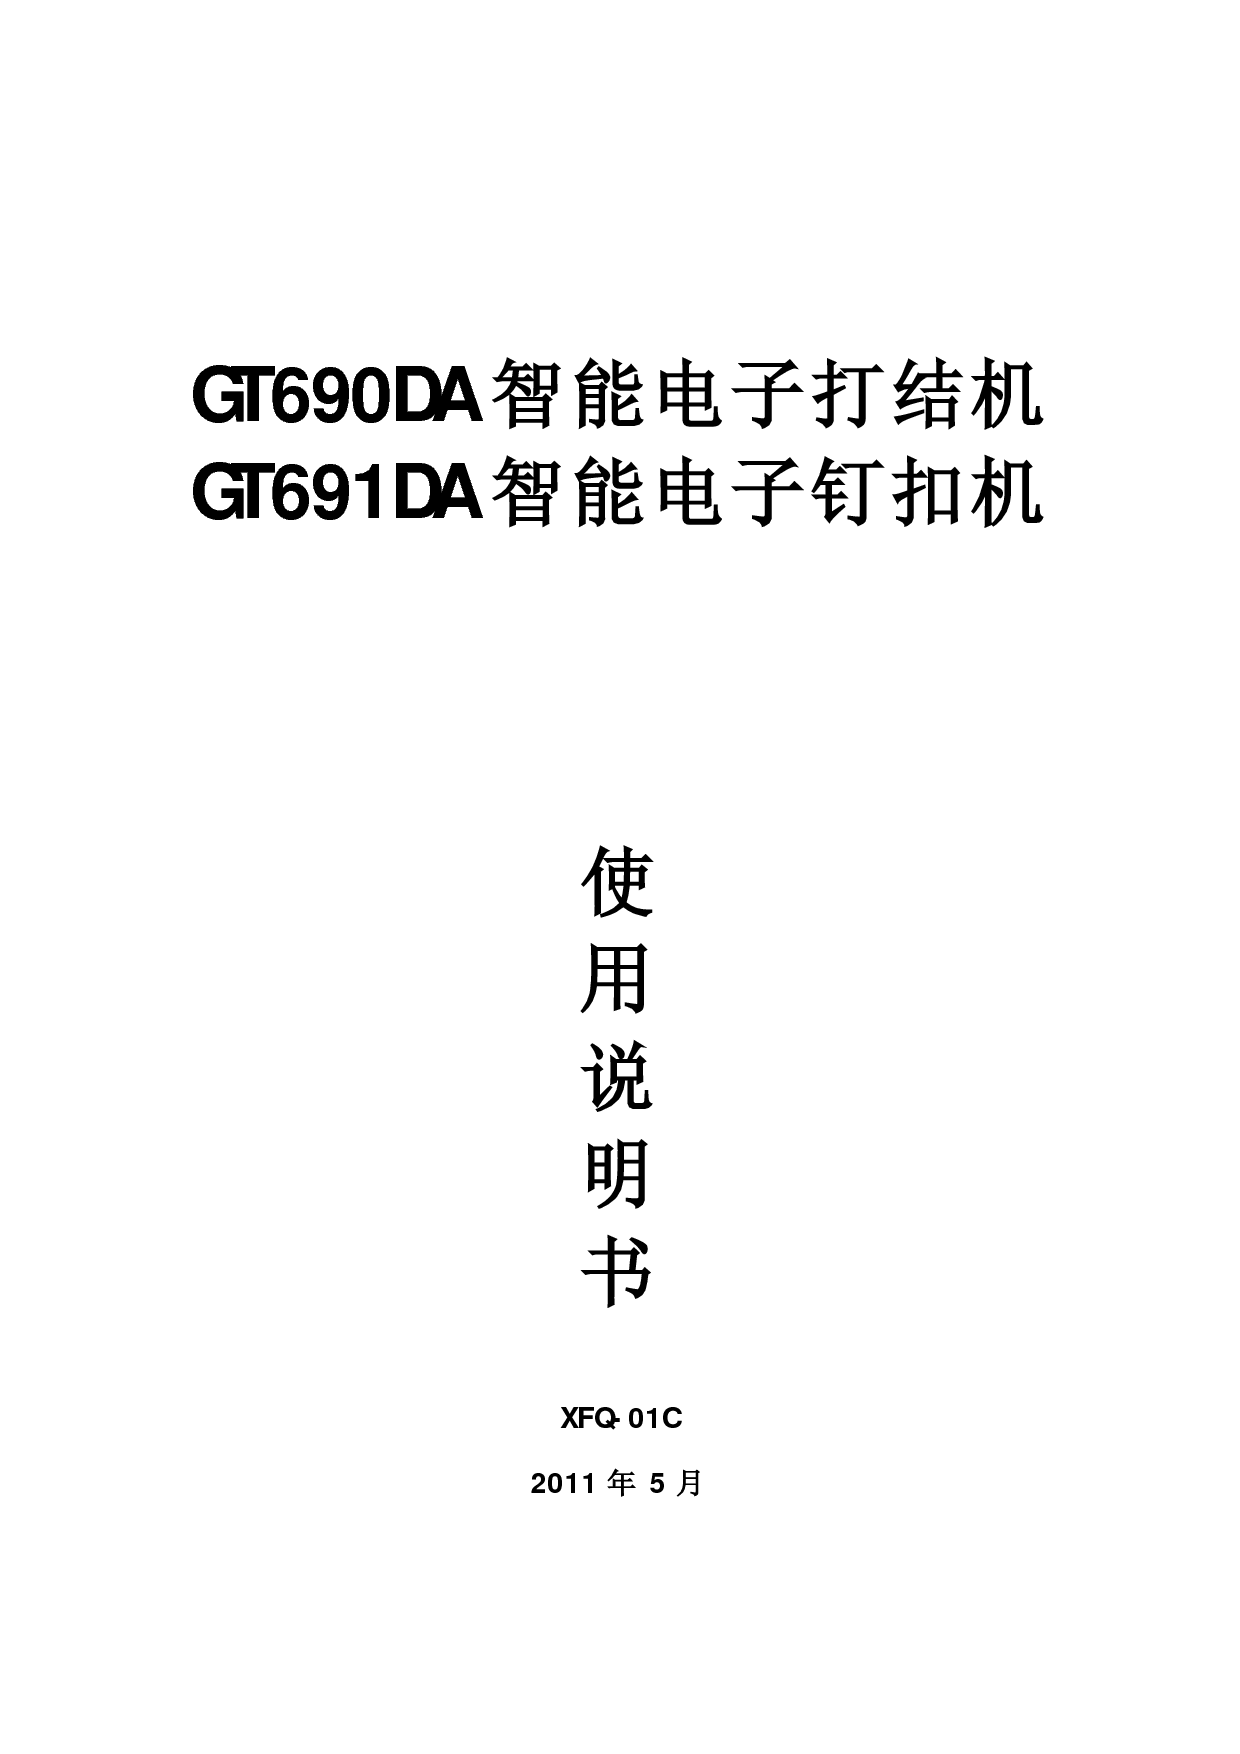 标准 Typical GT690DA, XFQ-01C 使用说明书 封面